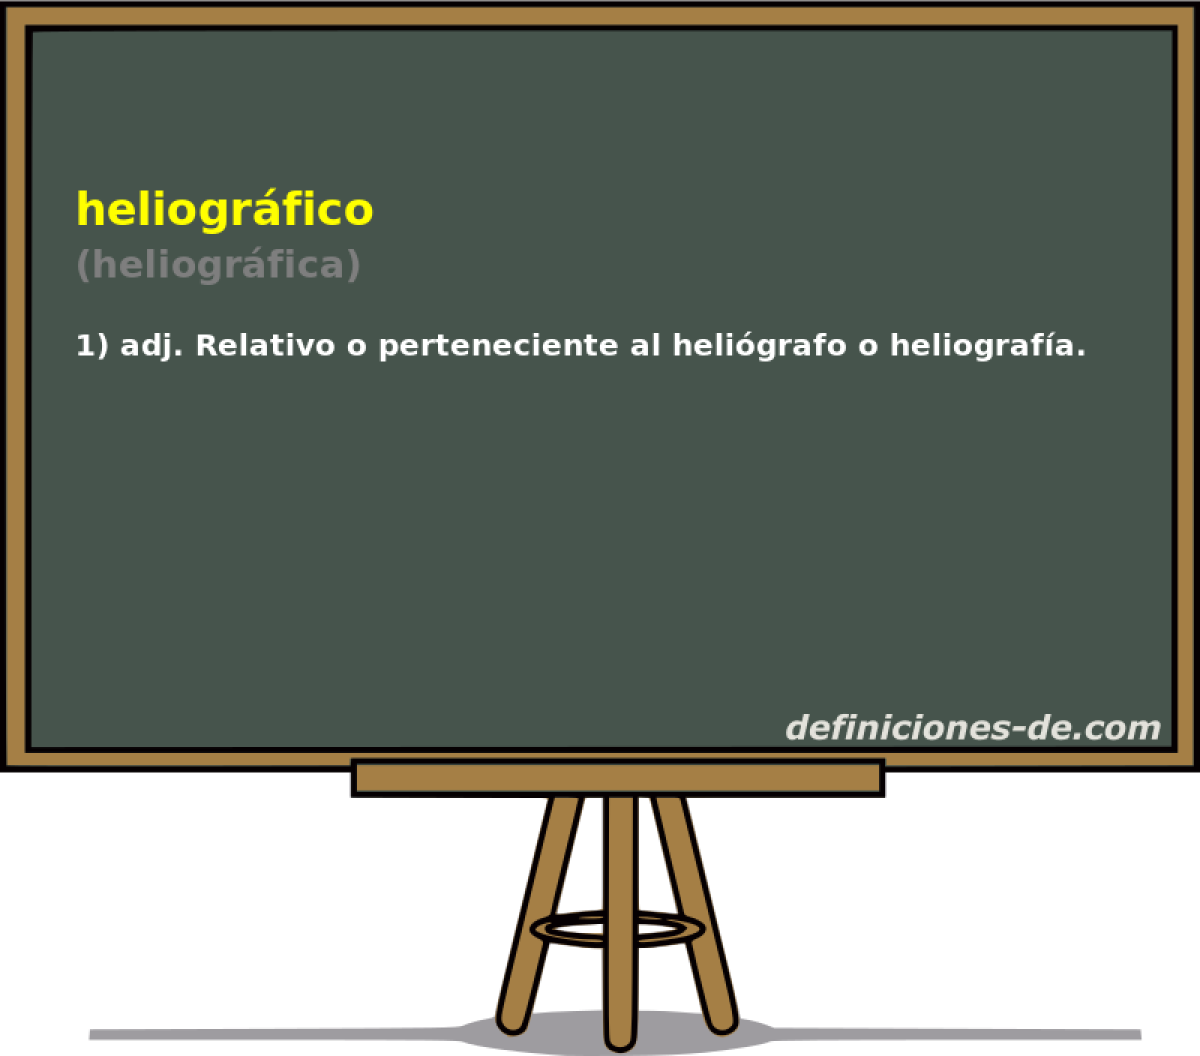 heliogrfico (heliogrfica)